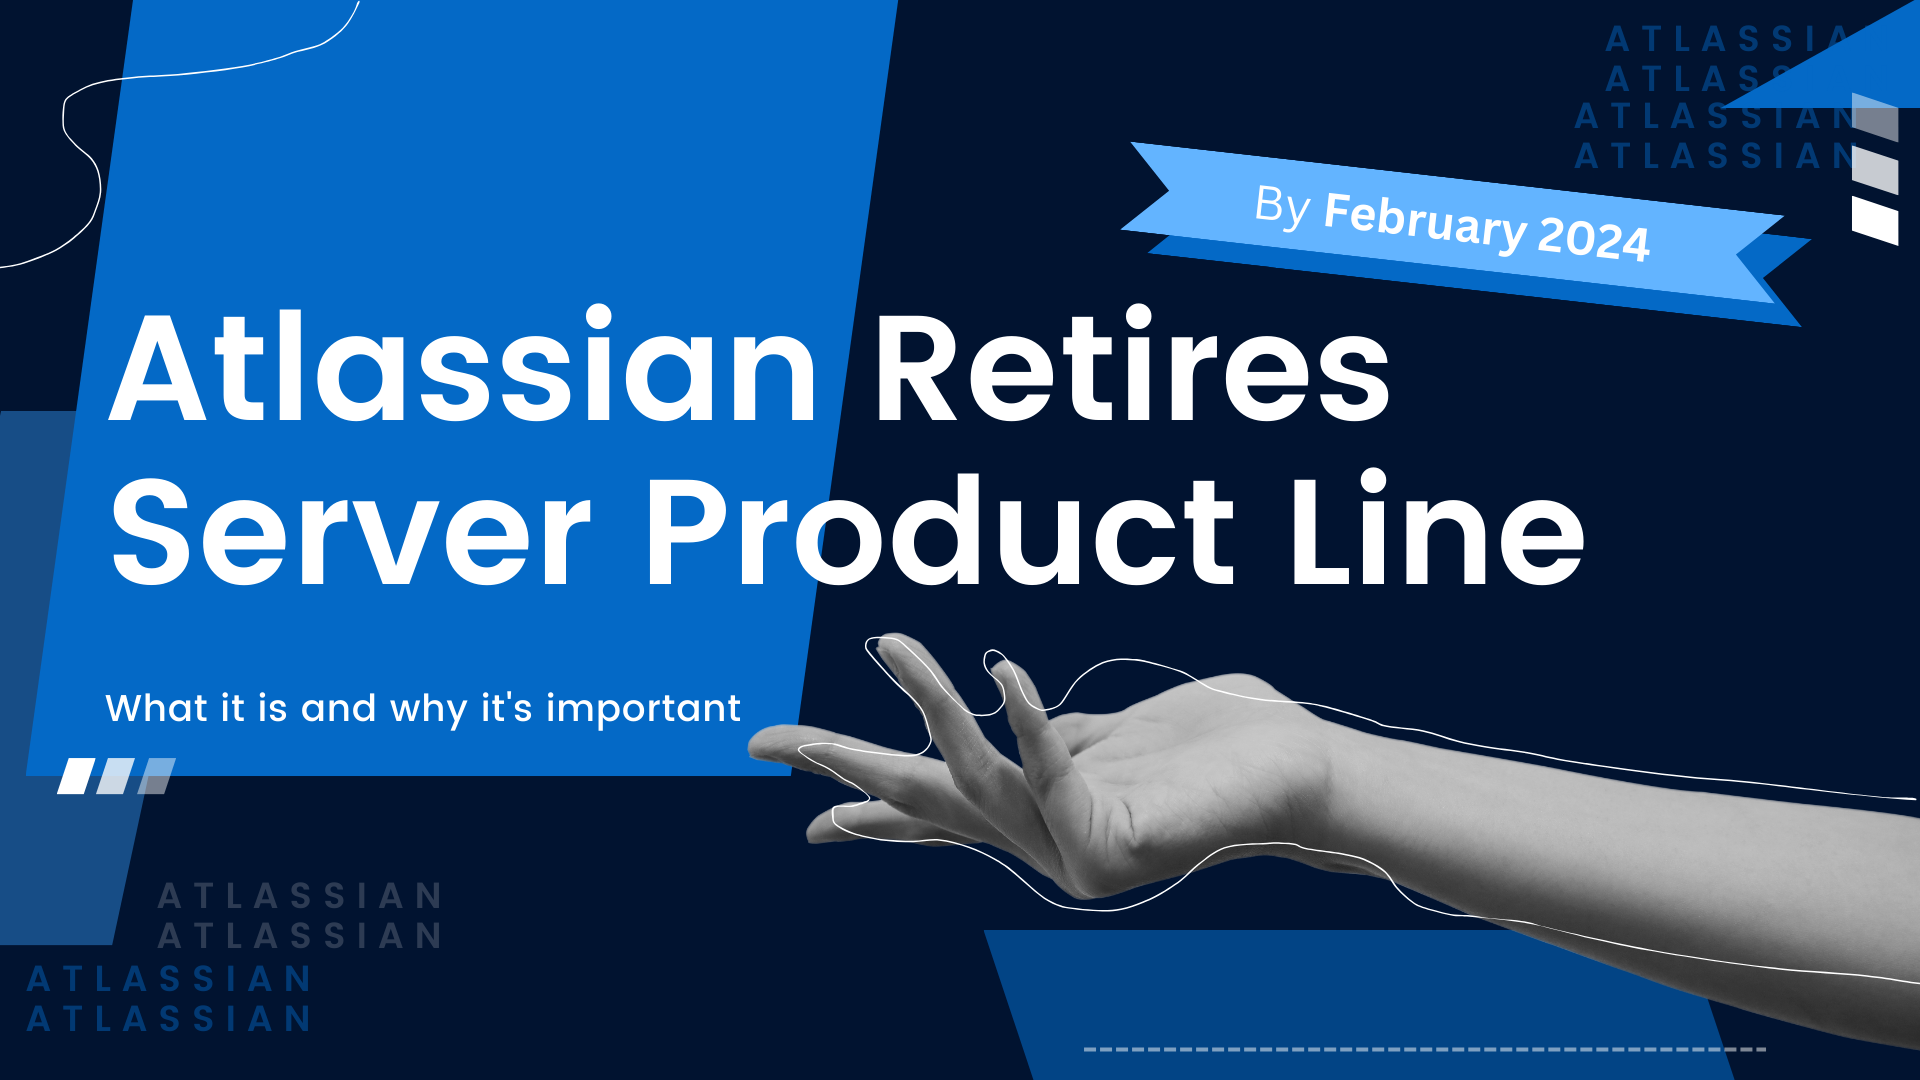 Banner of "Atlassian Retires Server Product Line"